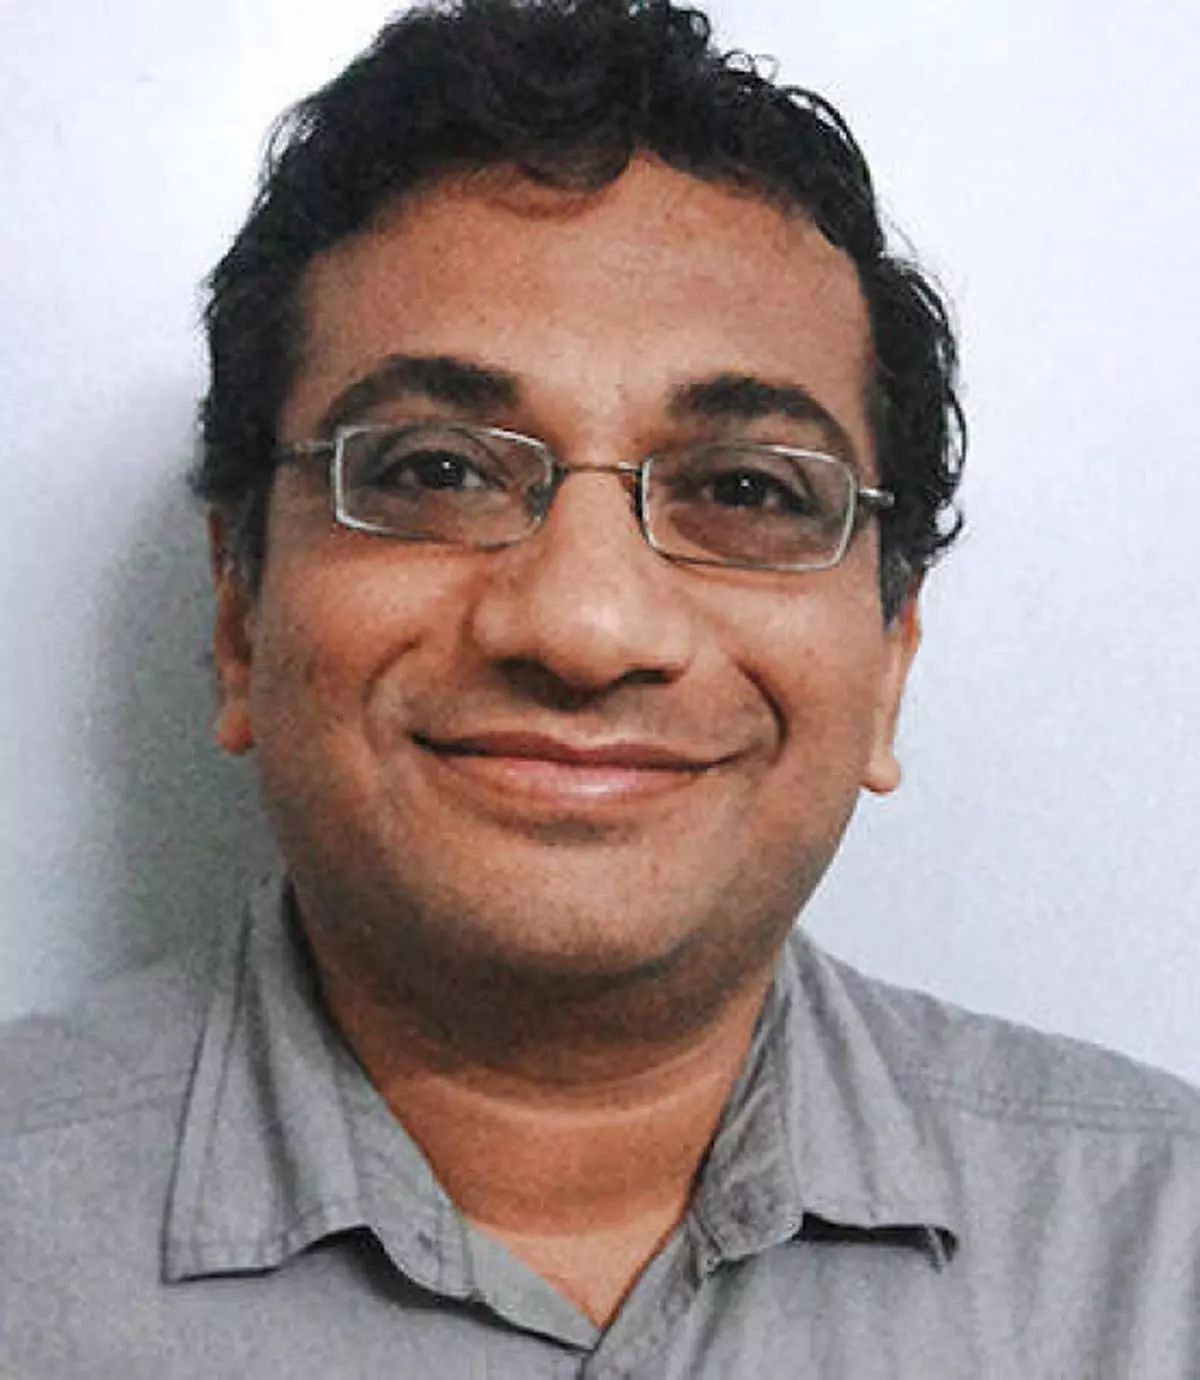 S Venkat, co-founder of MyCFO